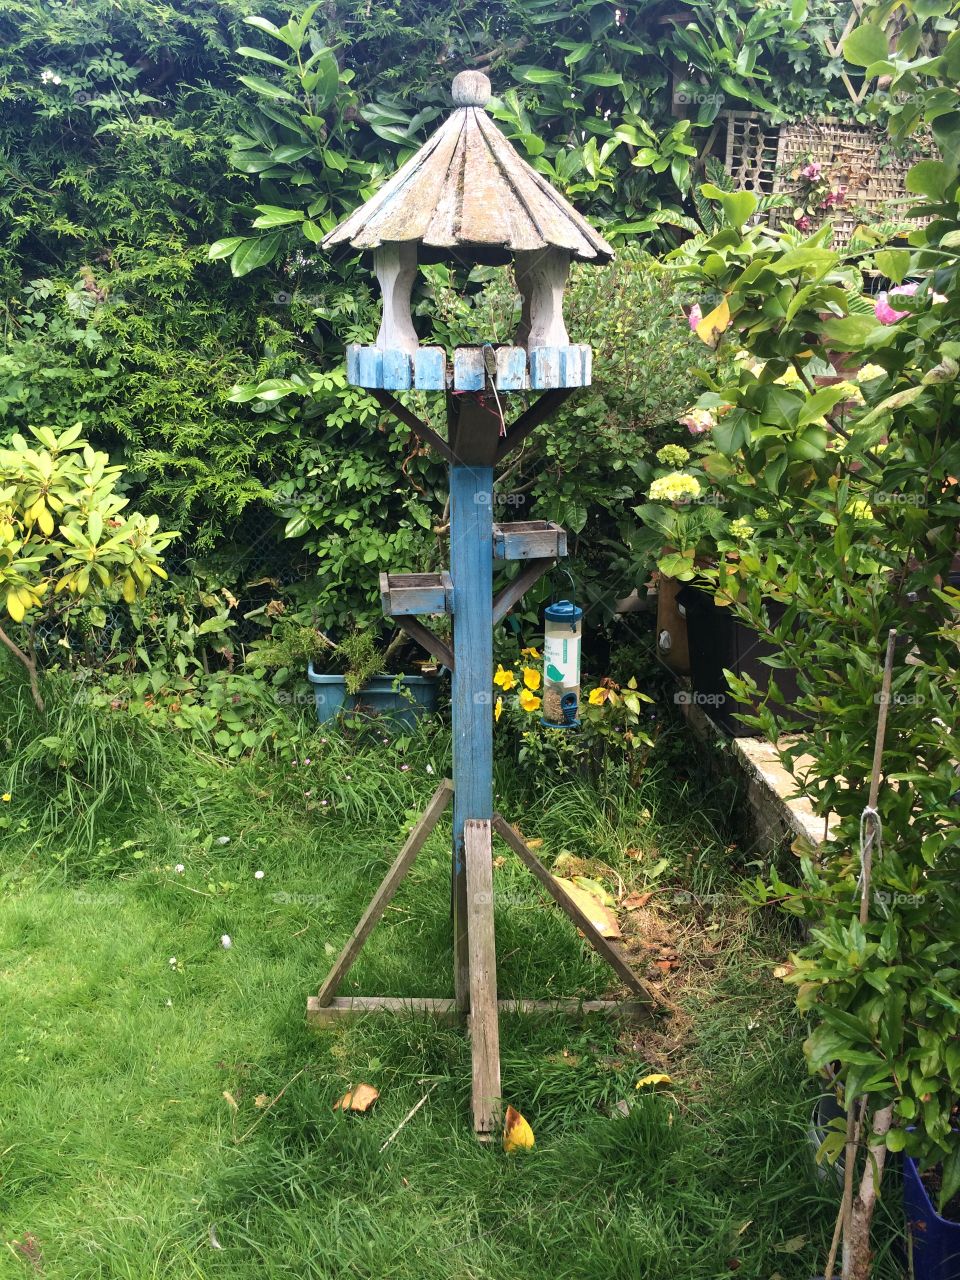 Wooden bird house feeder